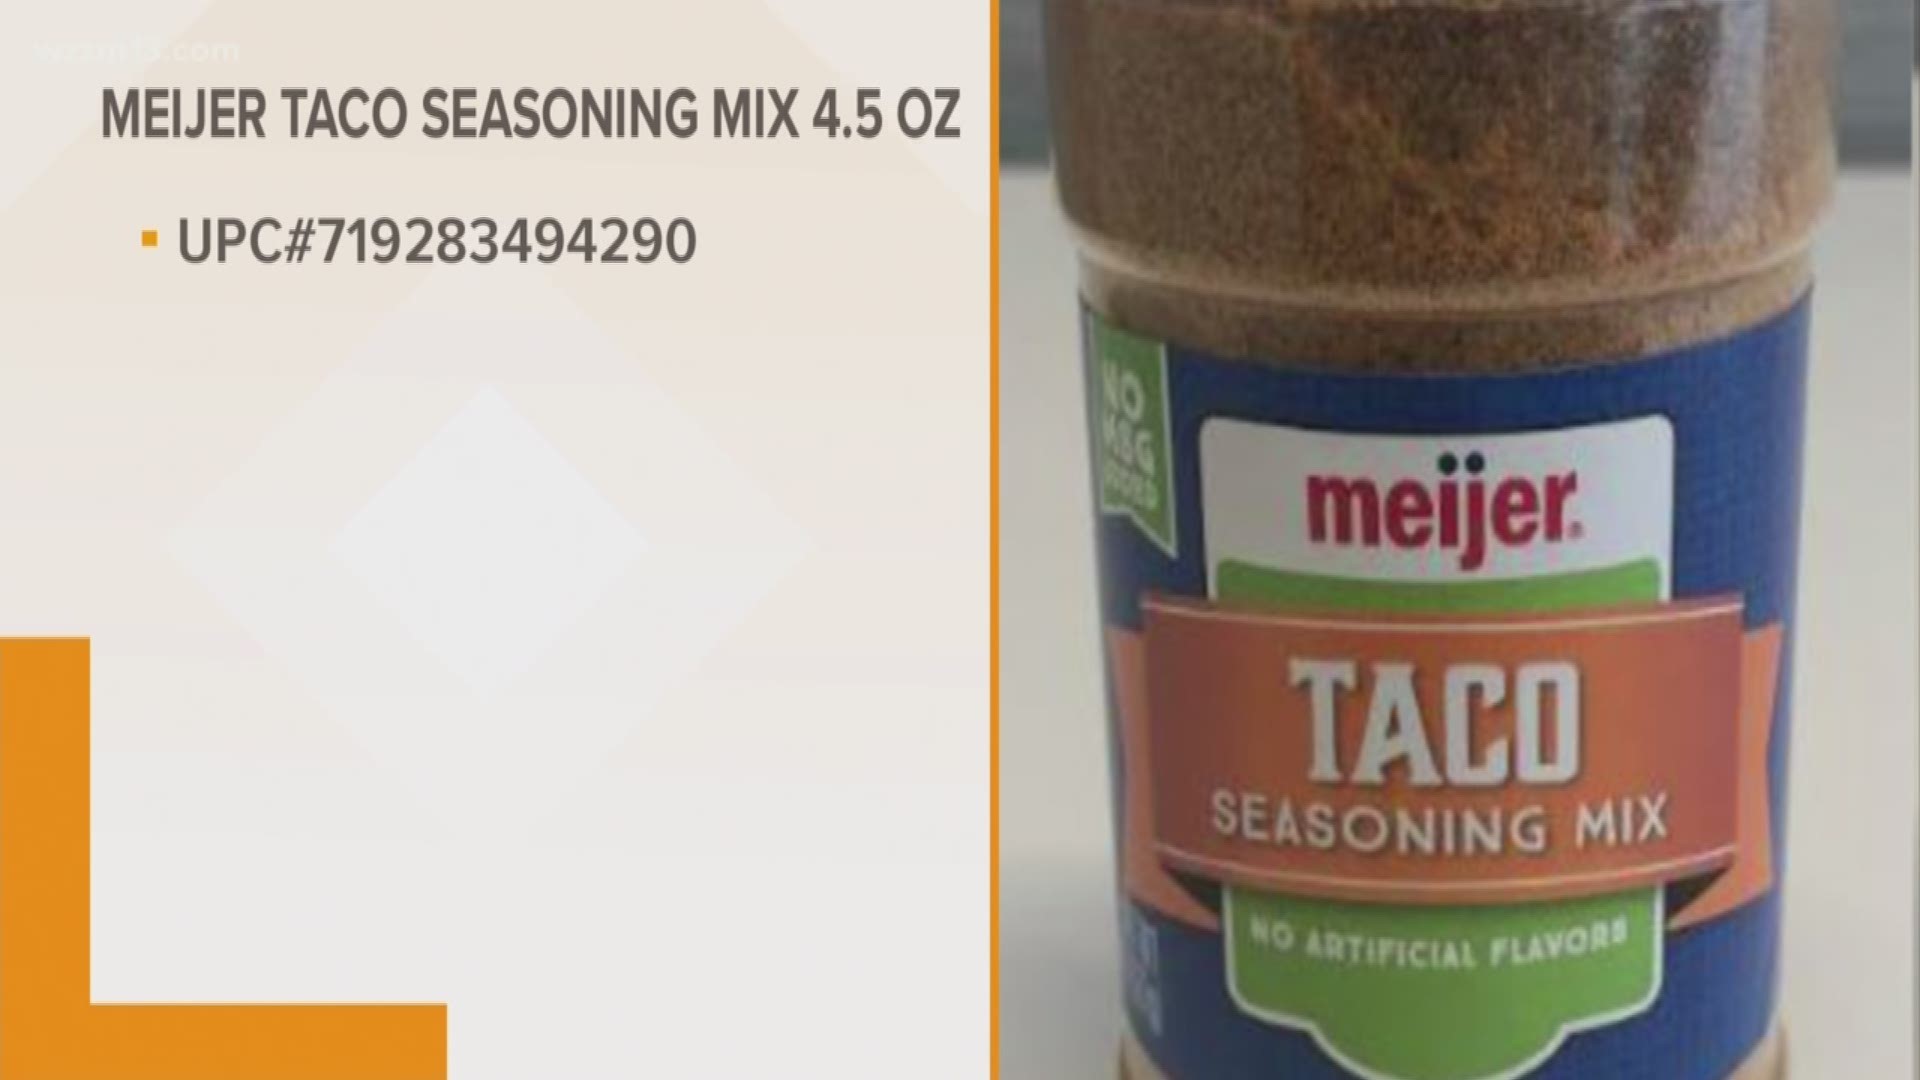 Meijer Taco Seasoning recalled